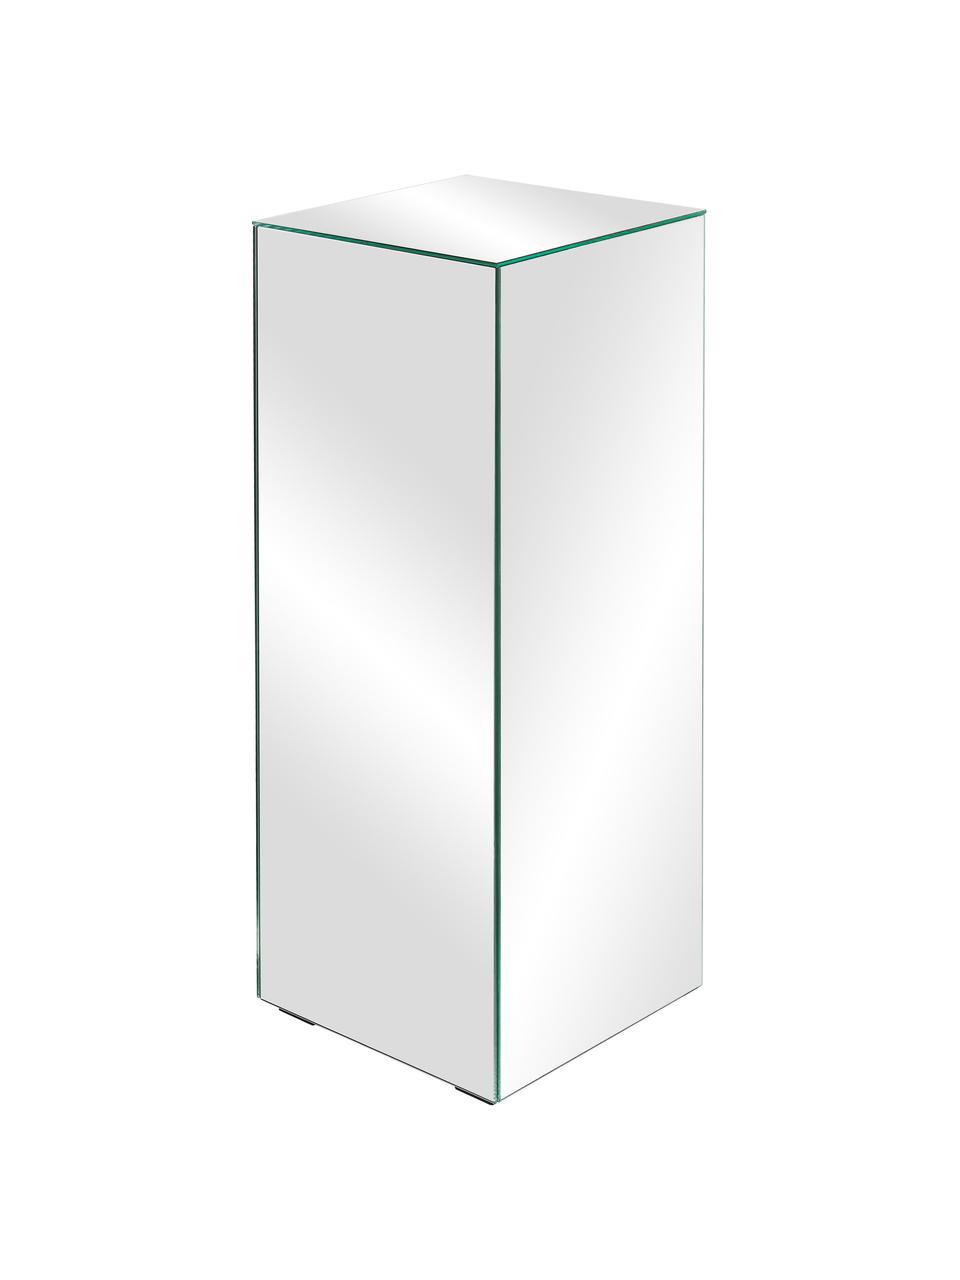 Dekosäule Pop mit Spiegel-Effekt, Mitteldichte Holzfaserplatte (MDF), Spiegelglas, Spiegelglas, B 27 x H 75 cm